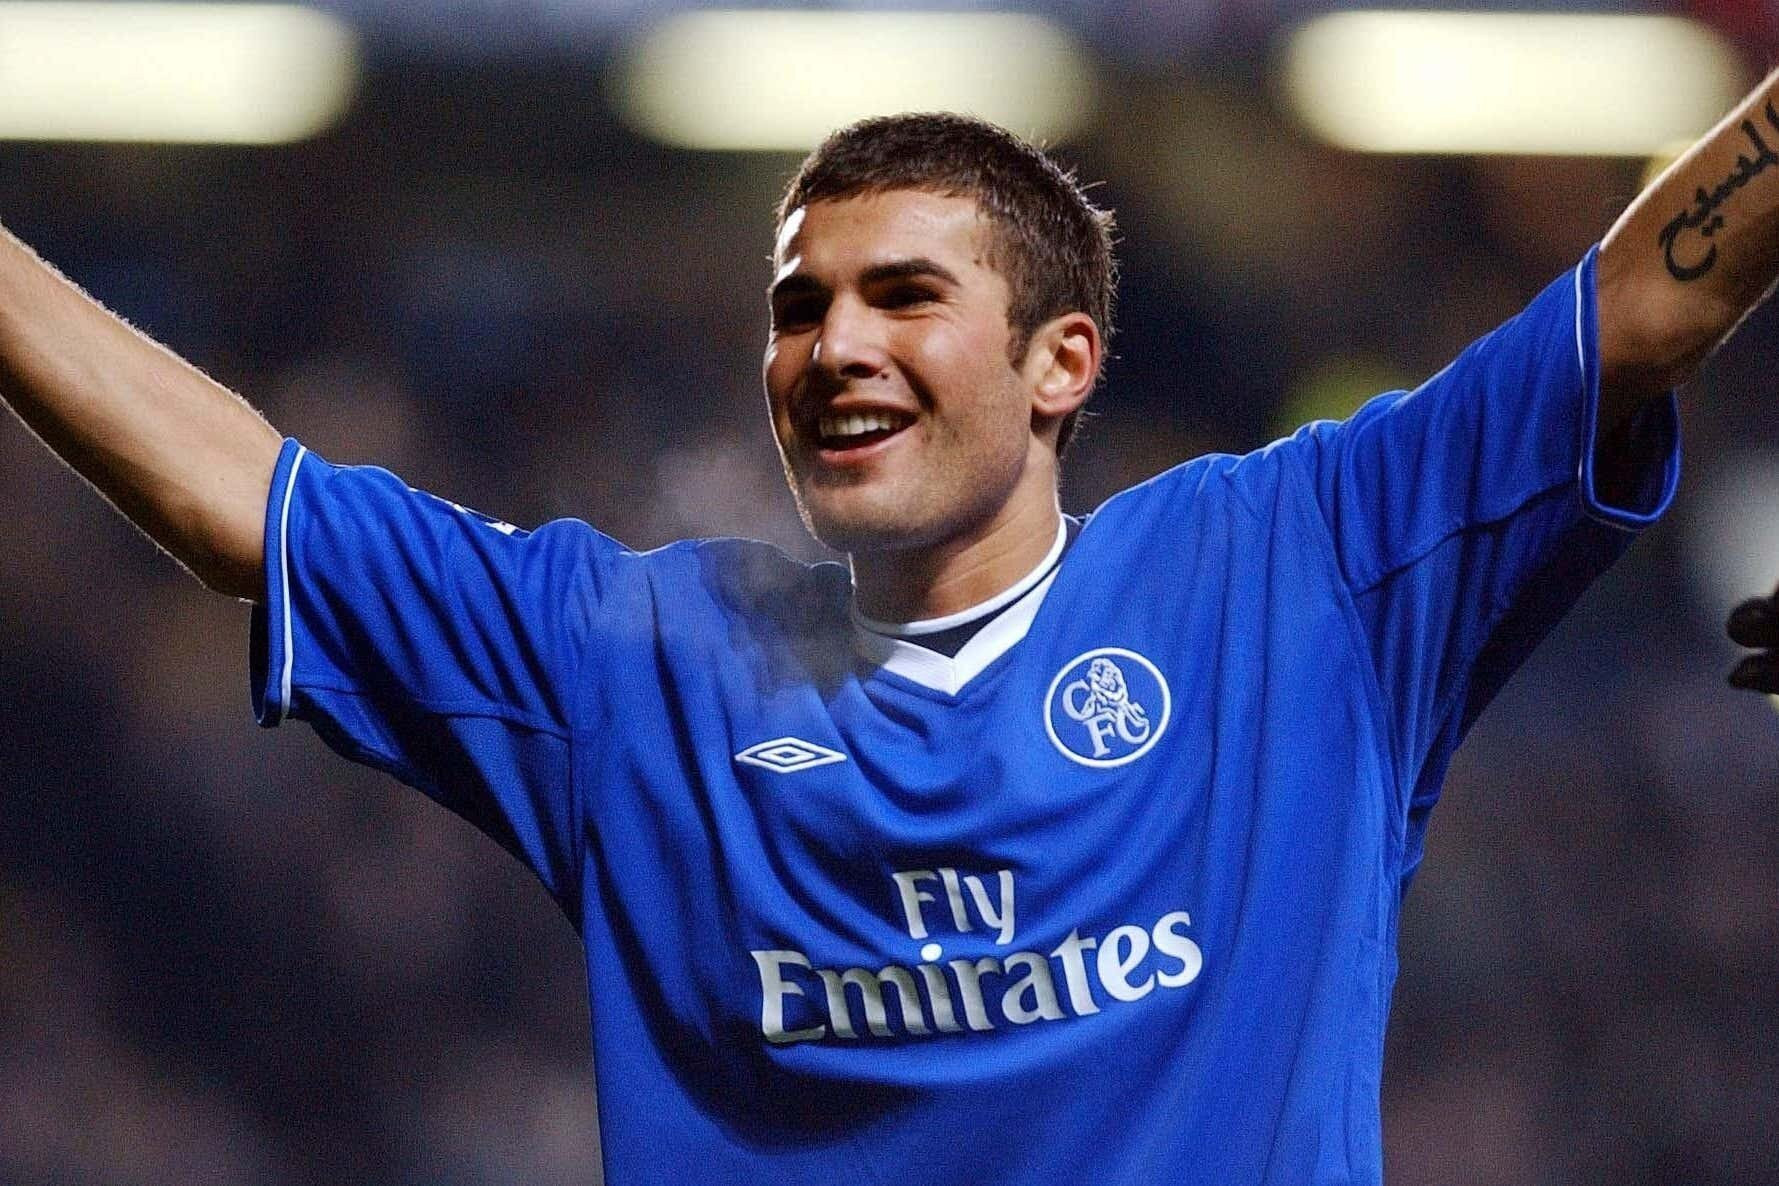 Năm 2003, Chelsea ký hợp đồng với Adrian Mutu - tài năng hàng đầu của bóng đá Romania. Lúc ấy anh được ví như 